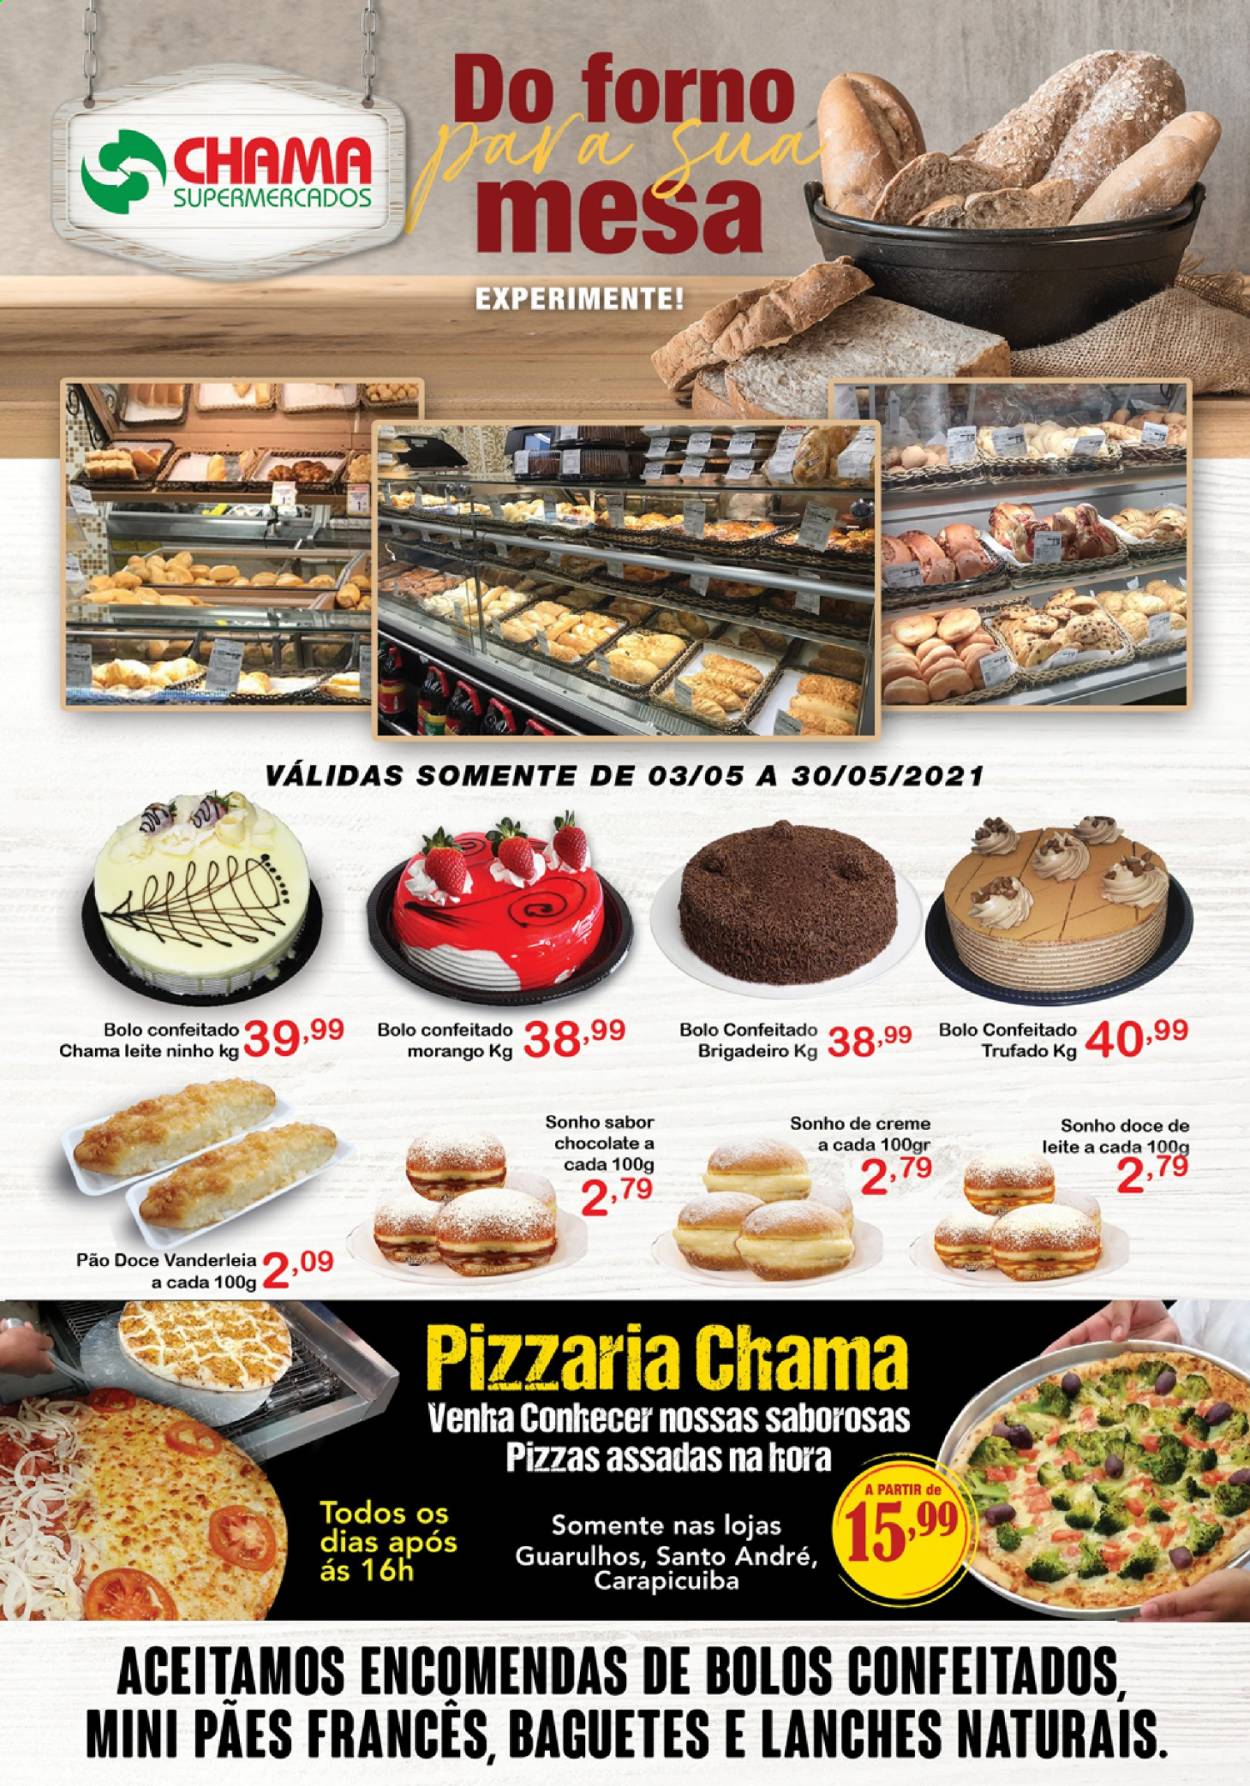 Encarte Chama Supermercados  - 03.05.2021 - 30.05.2021.